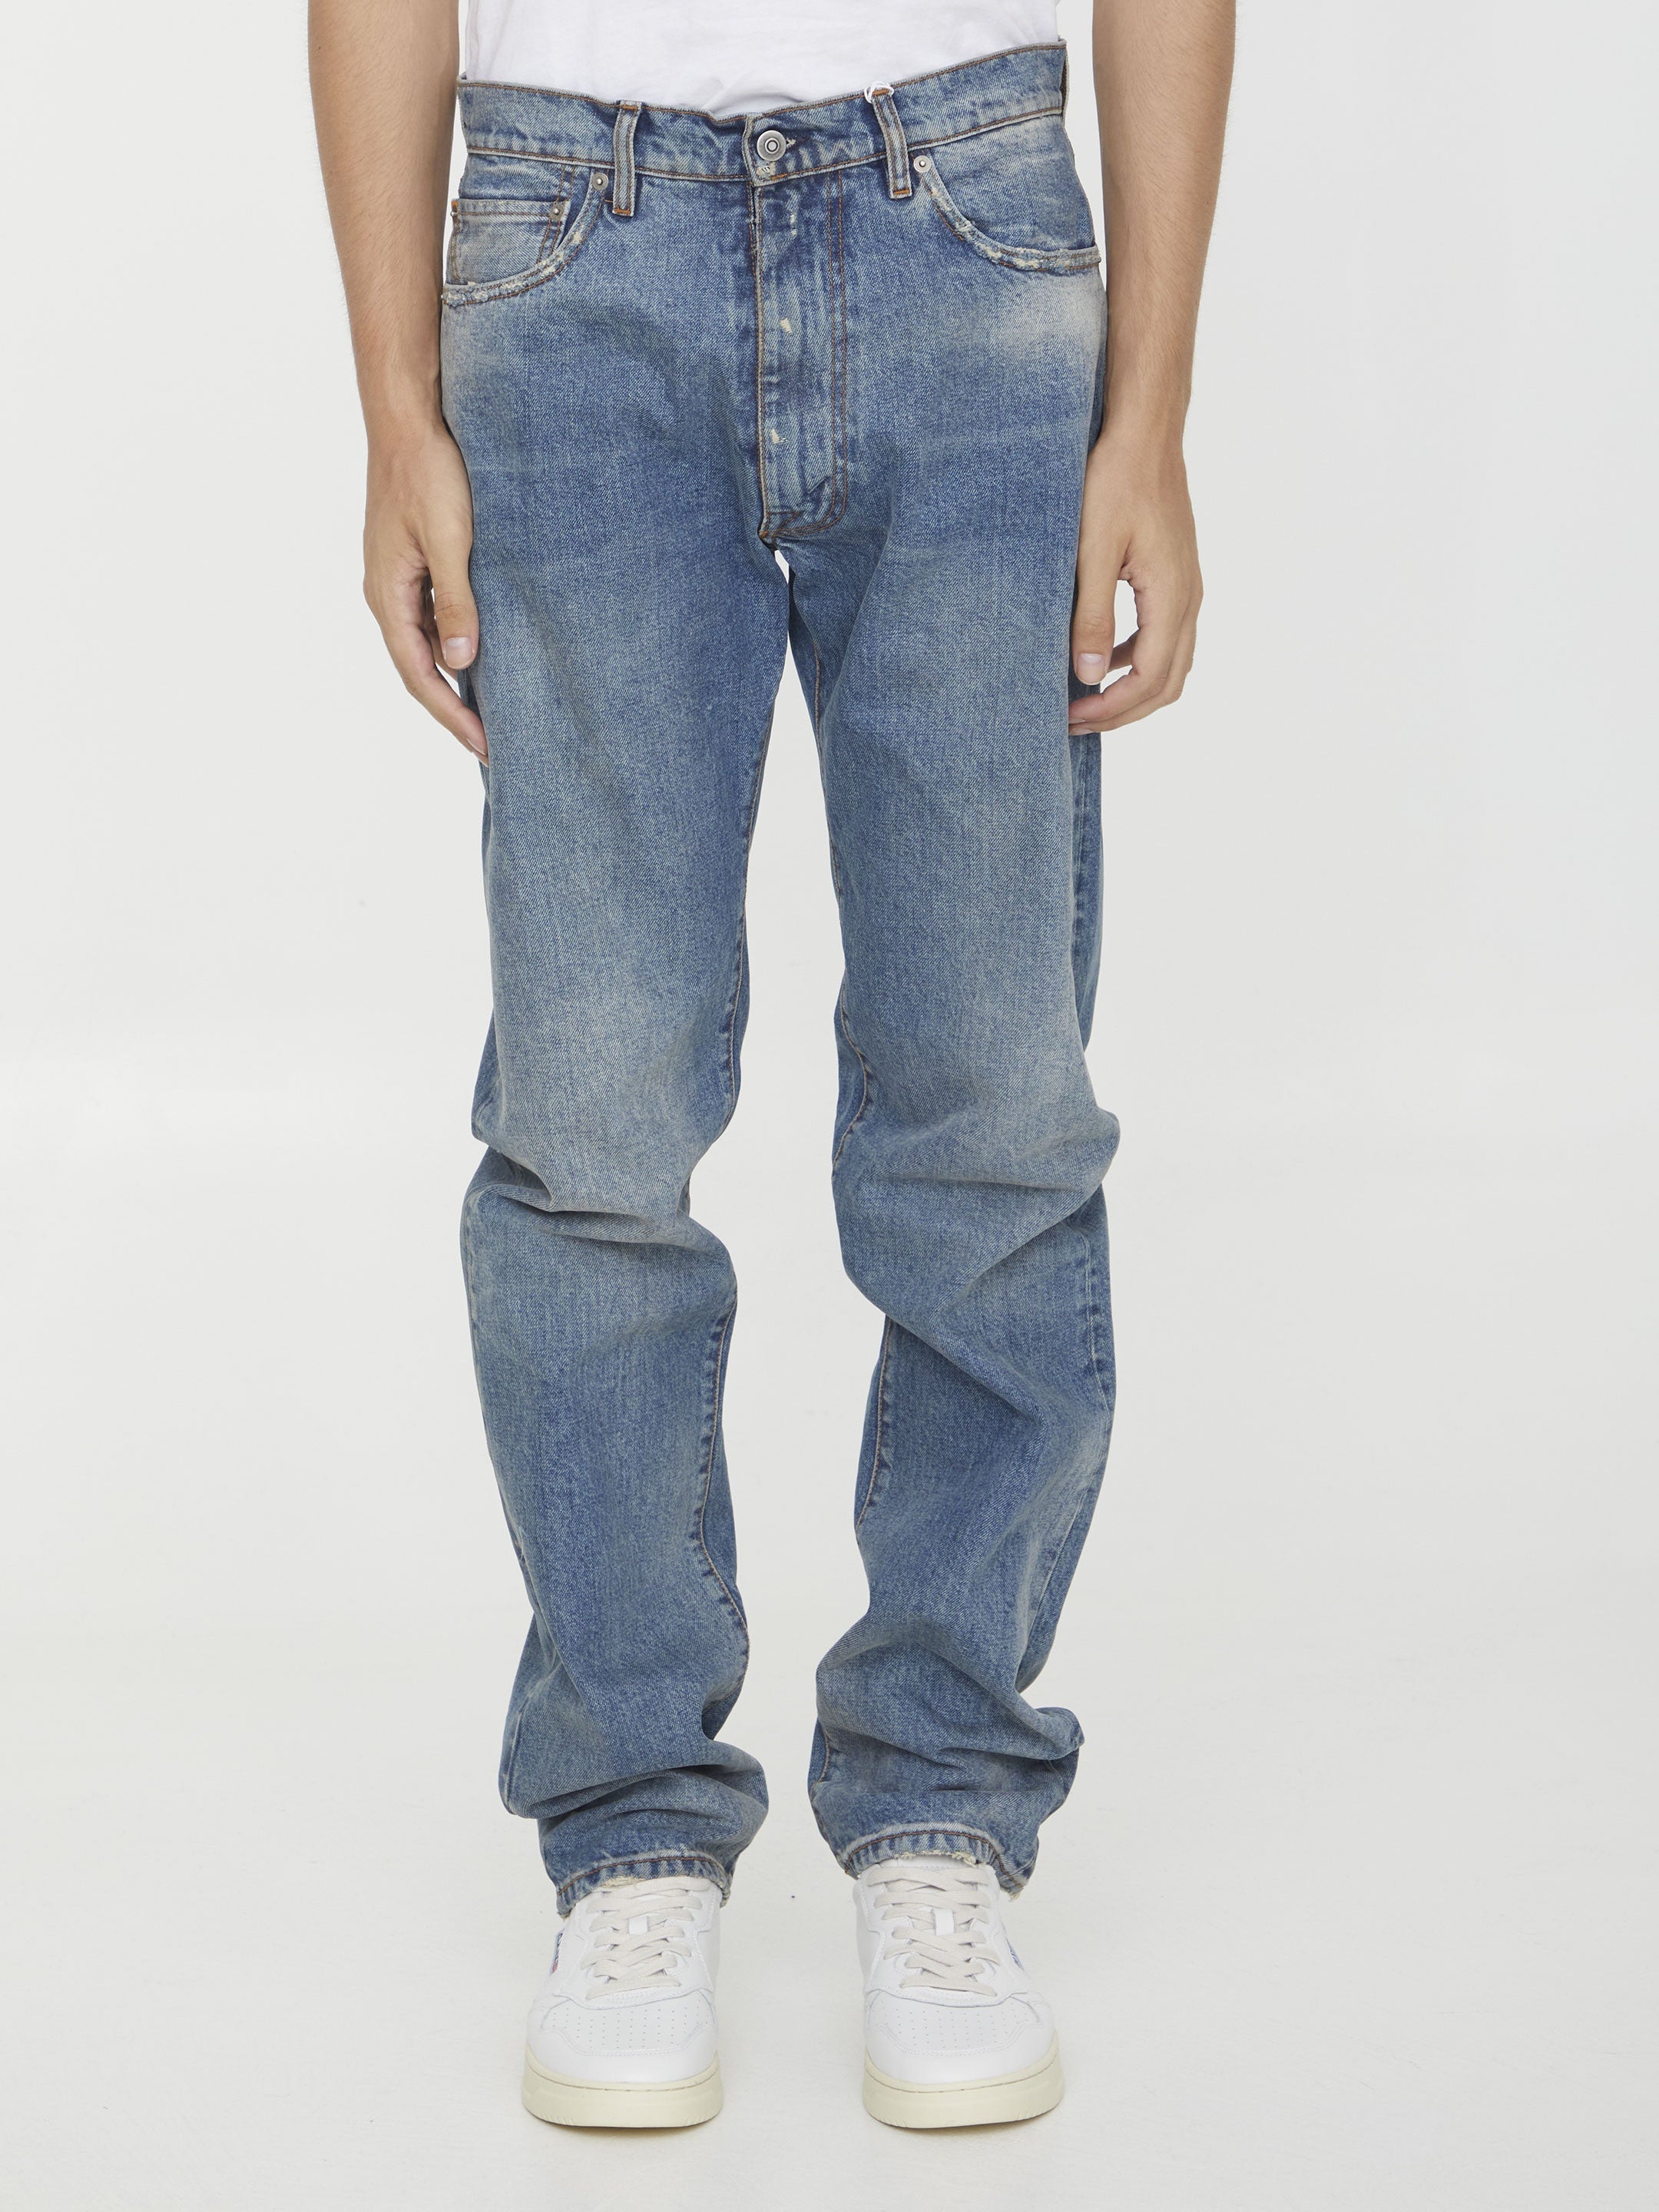 MAISON-MARGIELA-OUTLET-SALE-Distressed-denim-jeans-Jeans-30-BLUE-ARCHIVE-COLLECTION.jpg